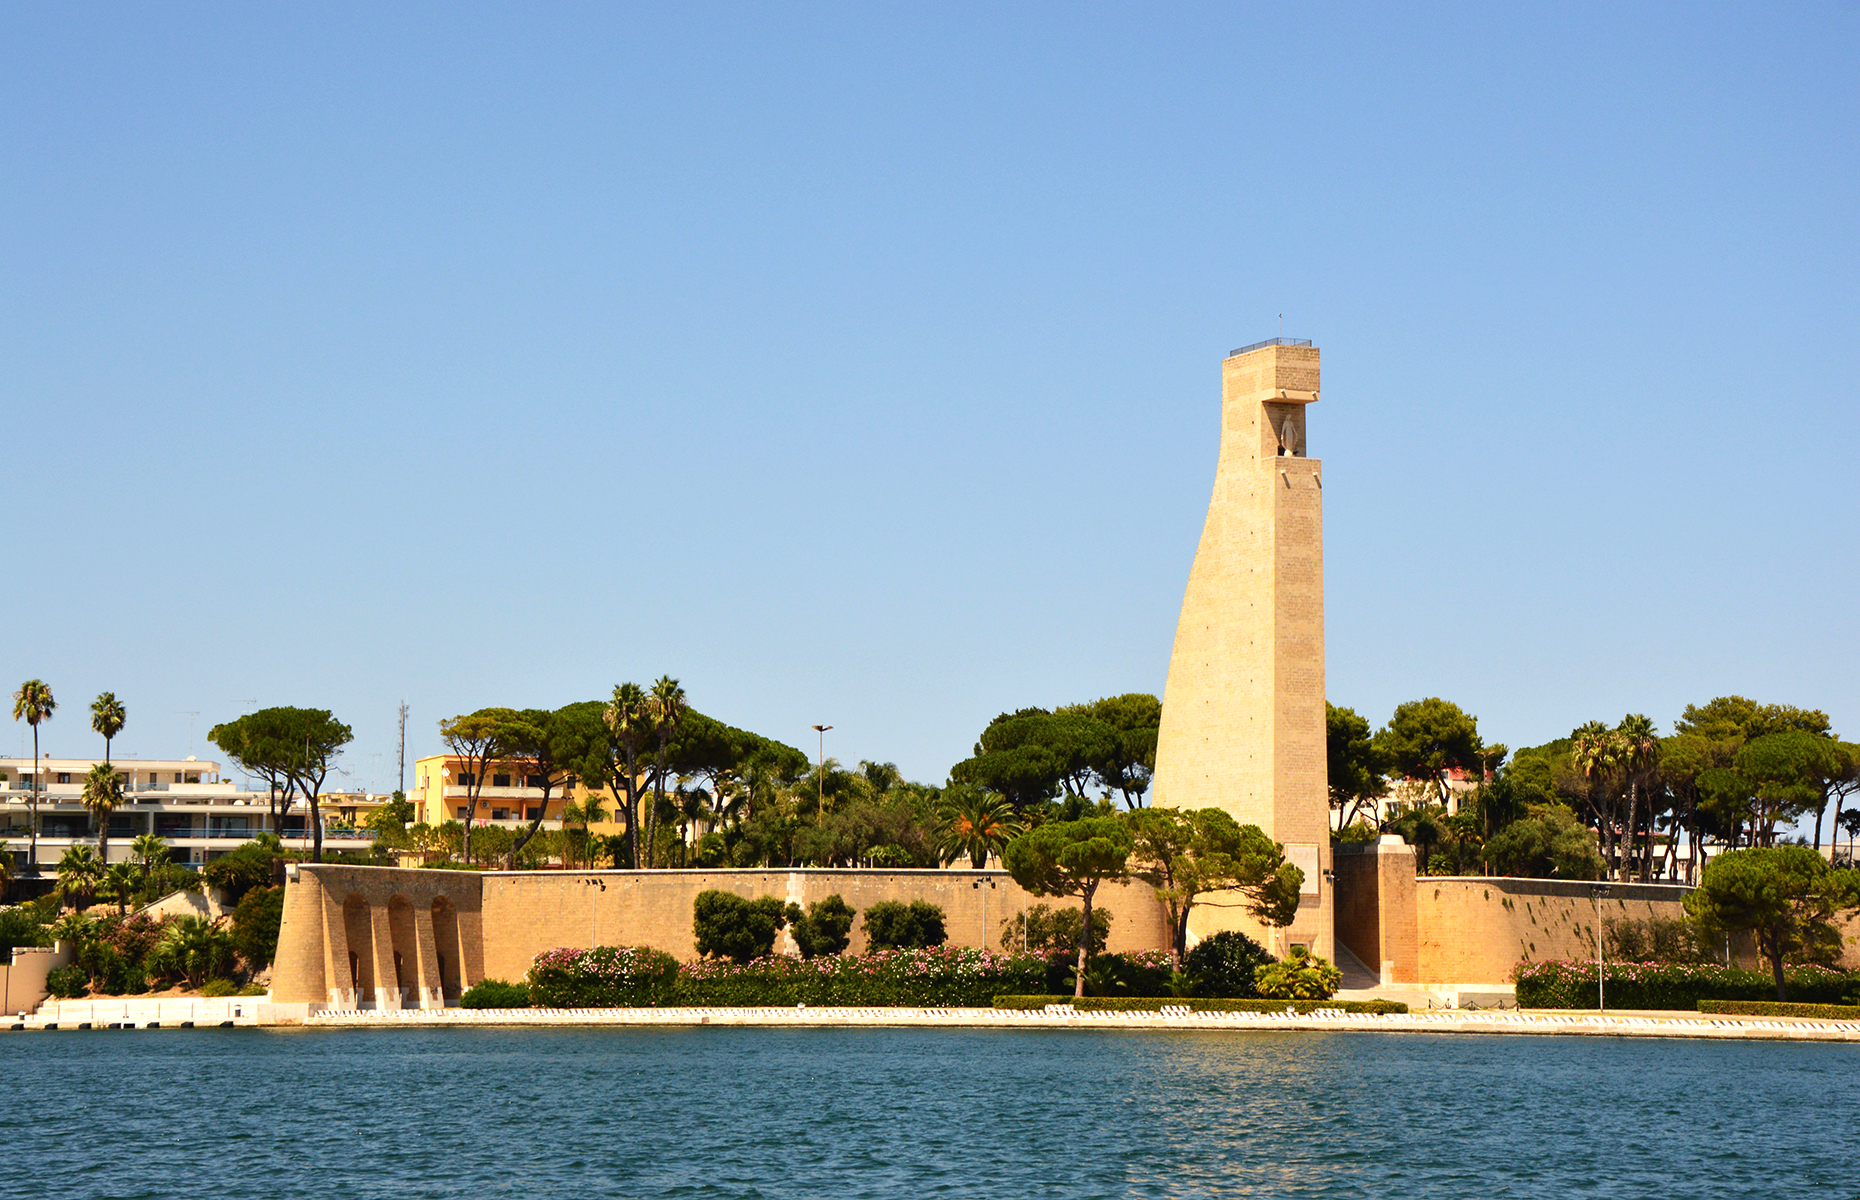 Italian Sailor Monument, Brindisi, Puglia, Italy (Image: Zigres/Shutterstock)